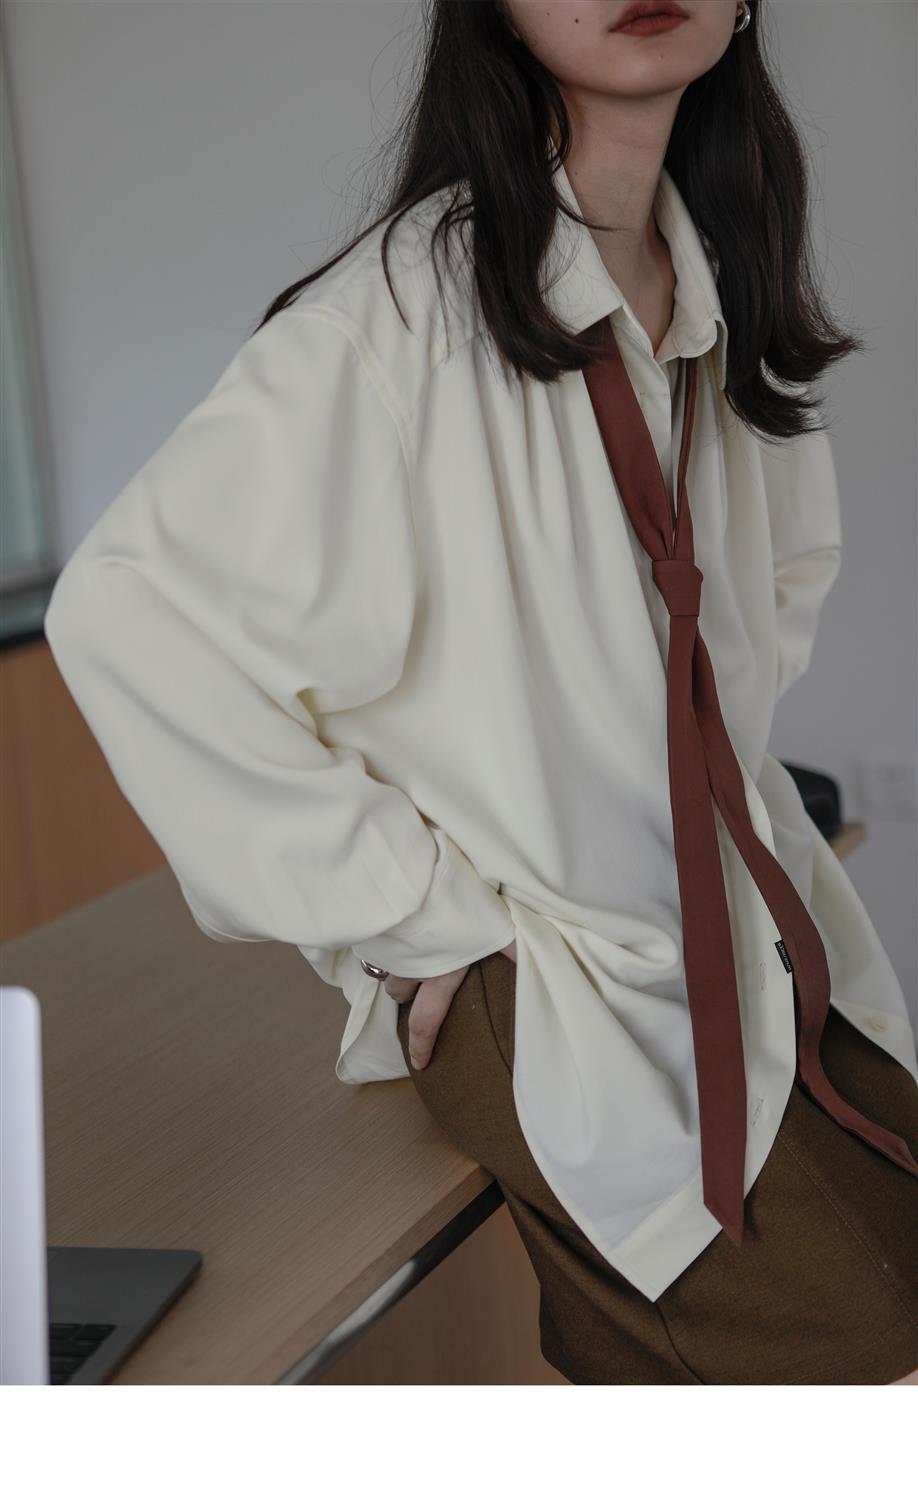 hulianfu Vintage Women Blouse Oversized Harajuku Chic Basic Korean Style with Tie Long Sleeve Shirt Loose Aesthetic Retro Female